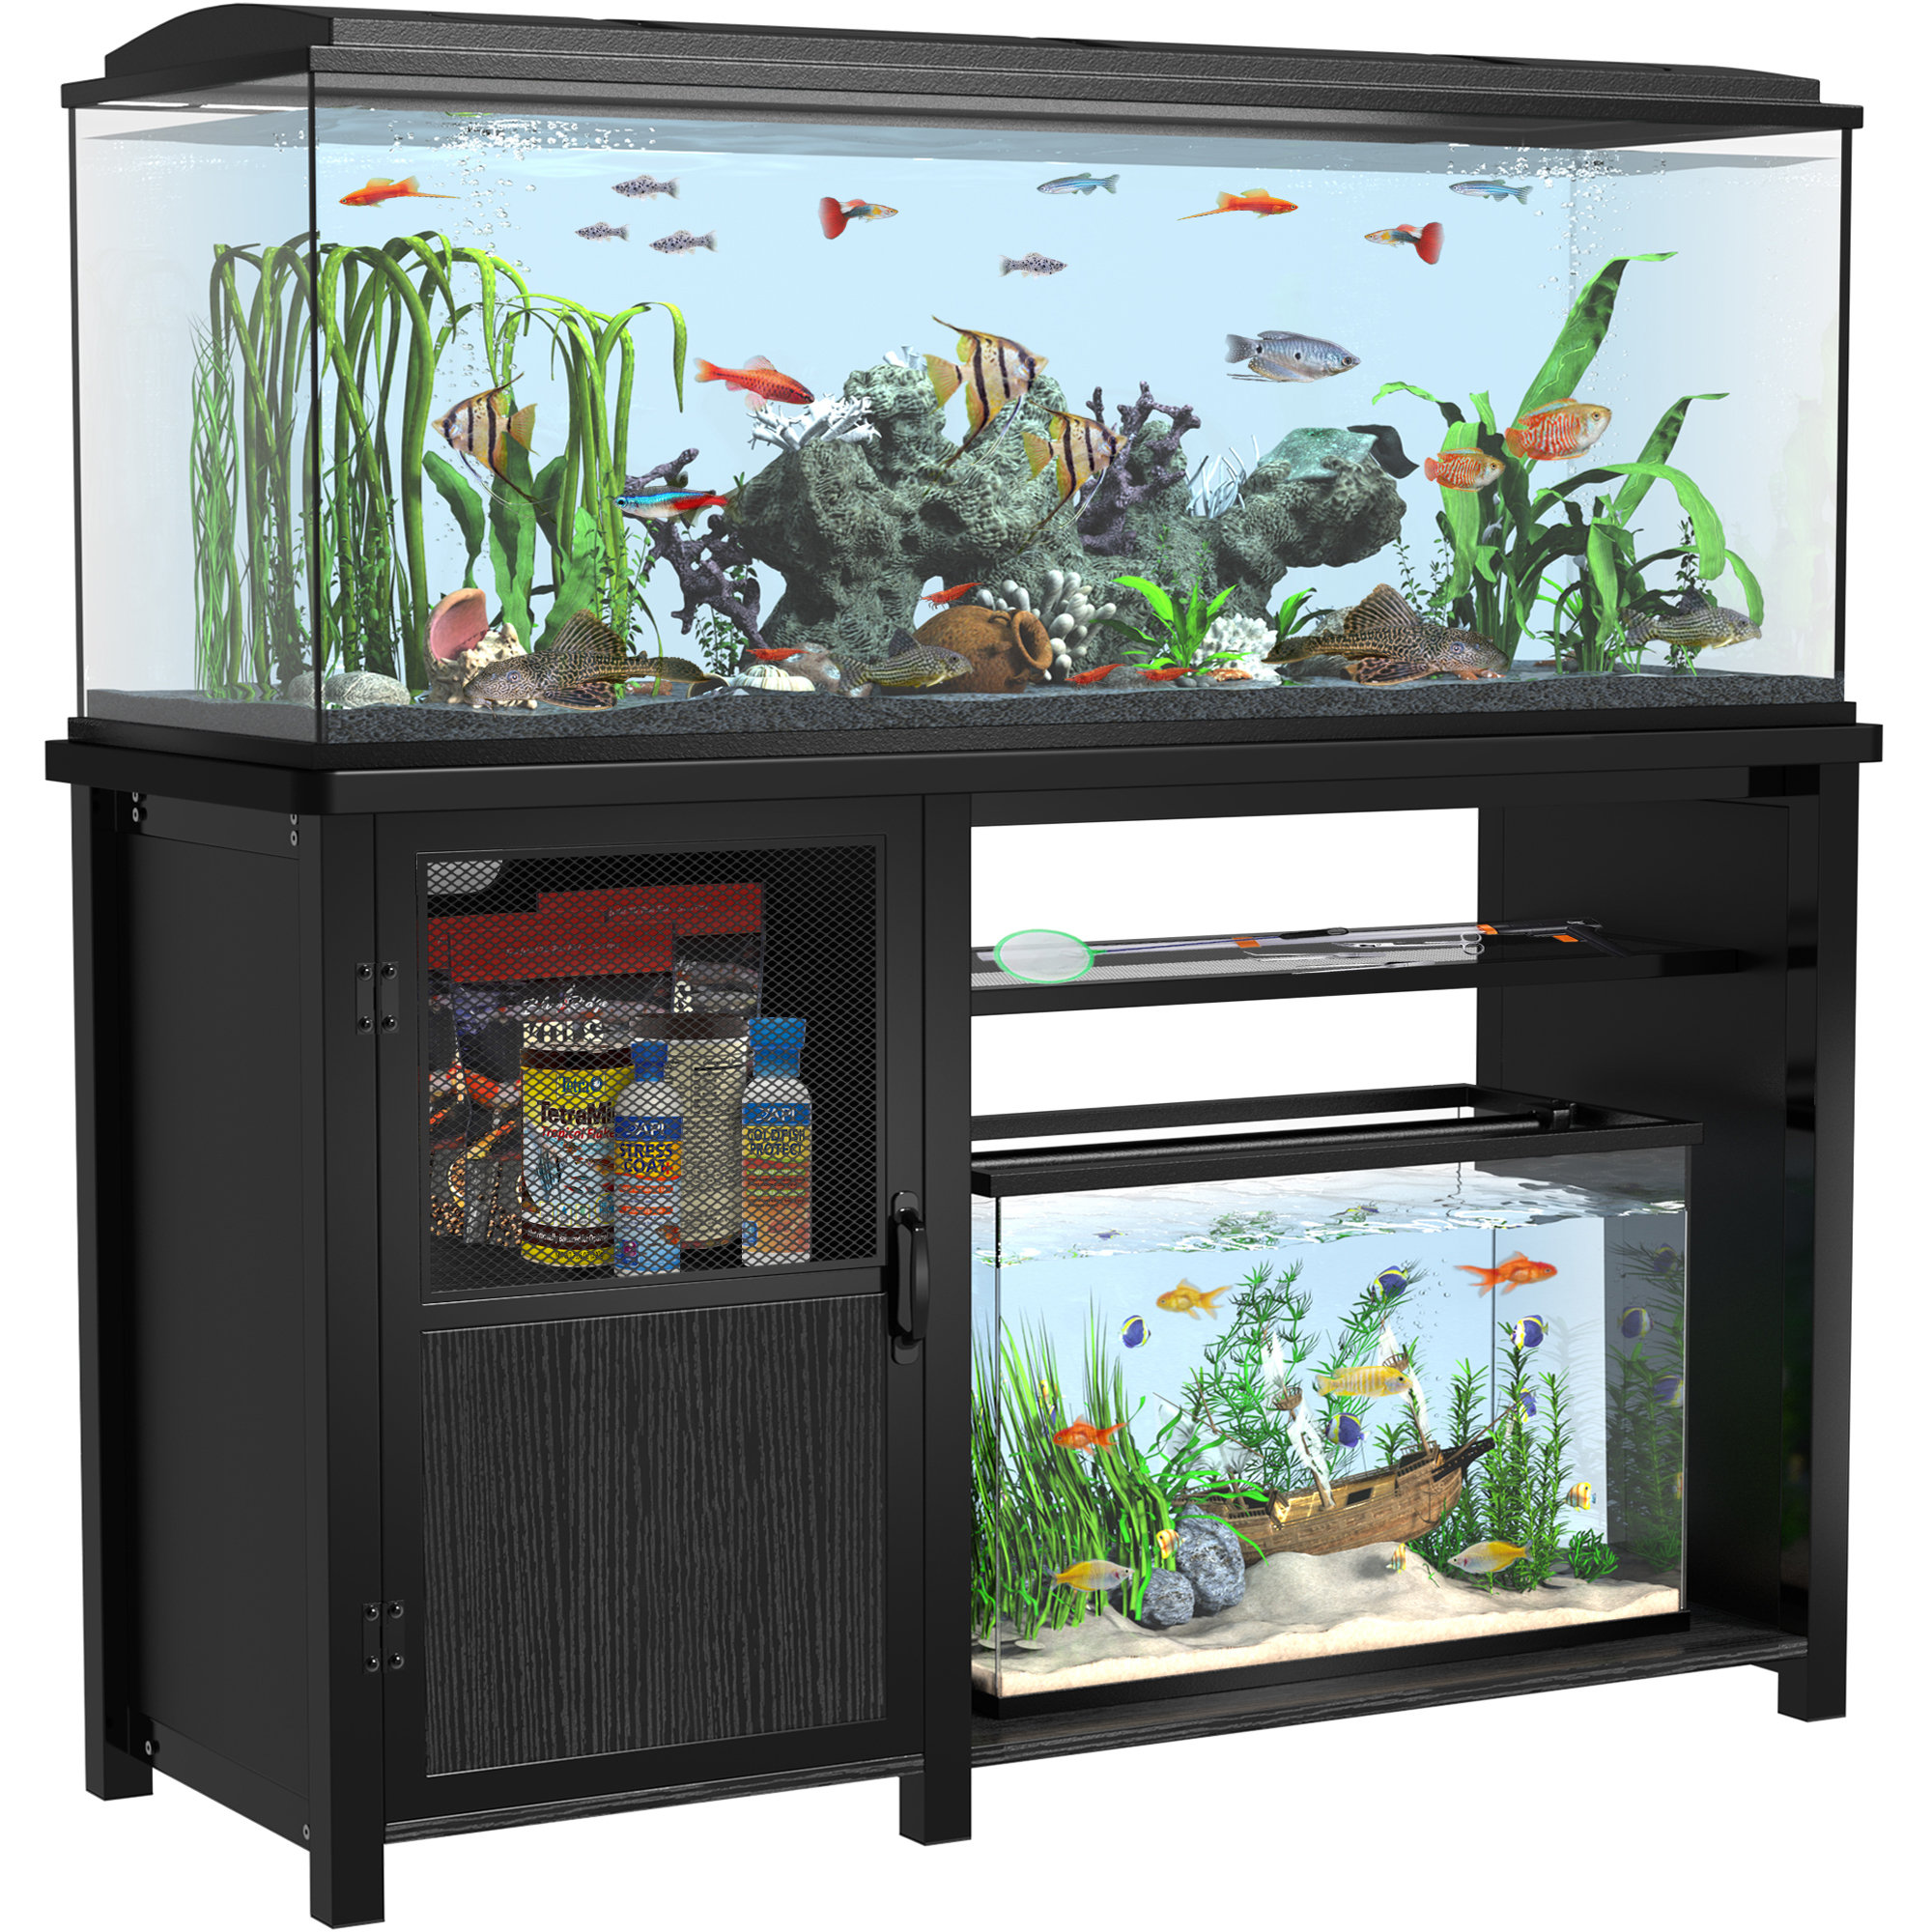 https://assets.wfcdn.com/im/33657294/compr-r85/2464/246439525/darnetta-rectangle-aquarium-stand.jpg